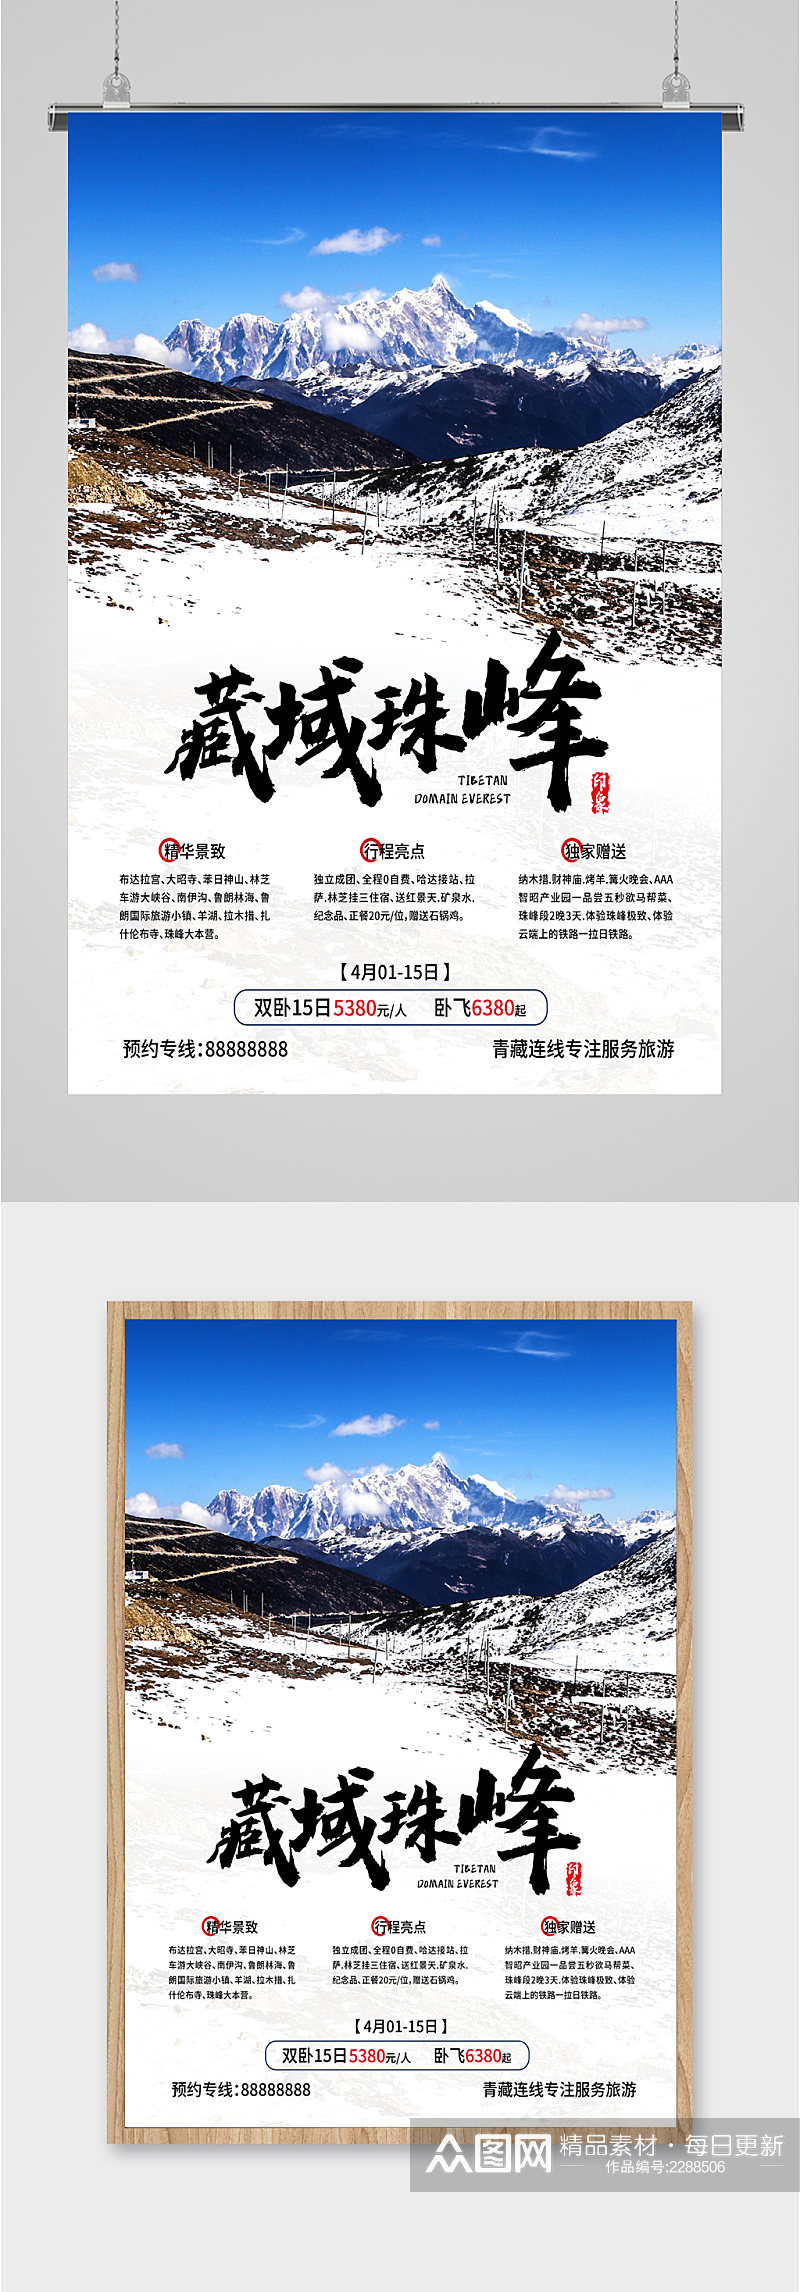 藏域珠峰特色景区海报素材